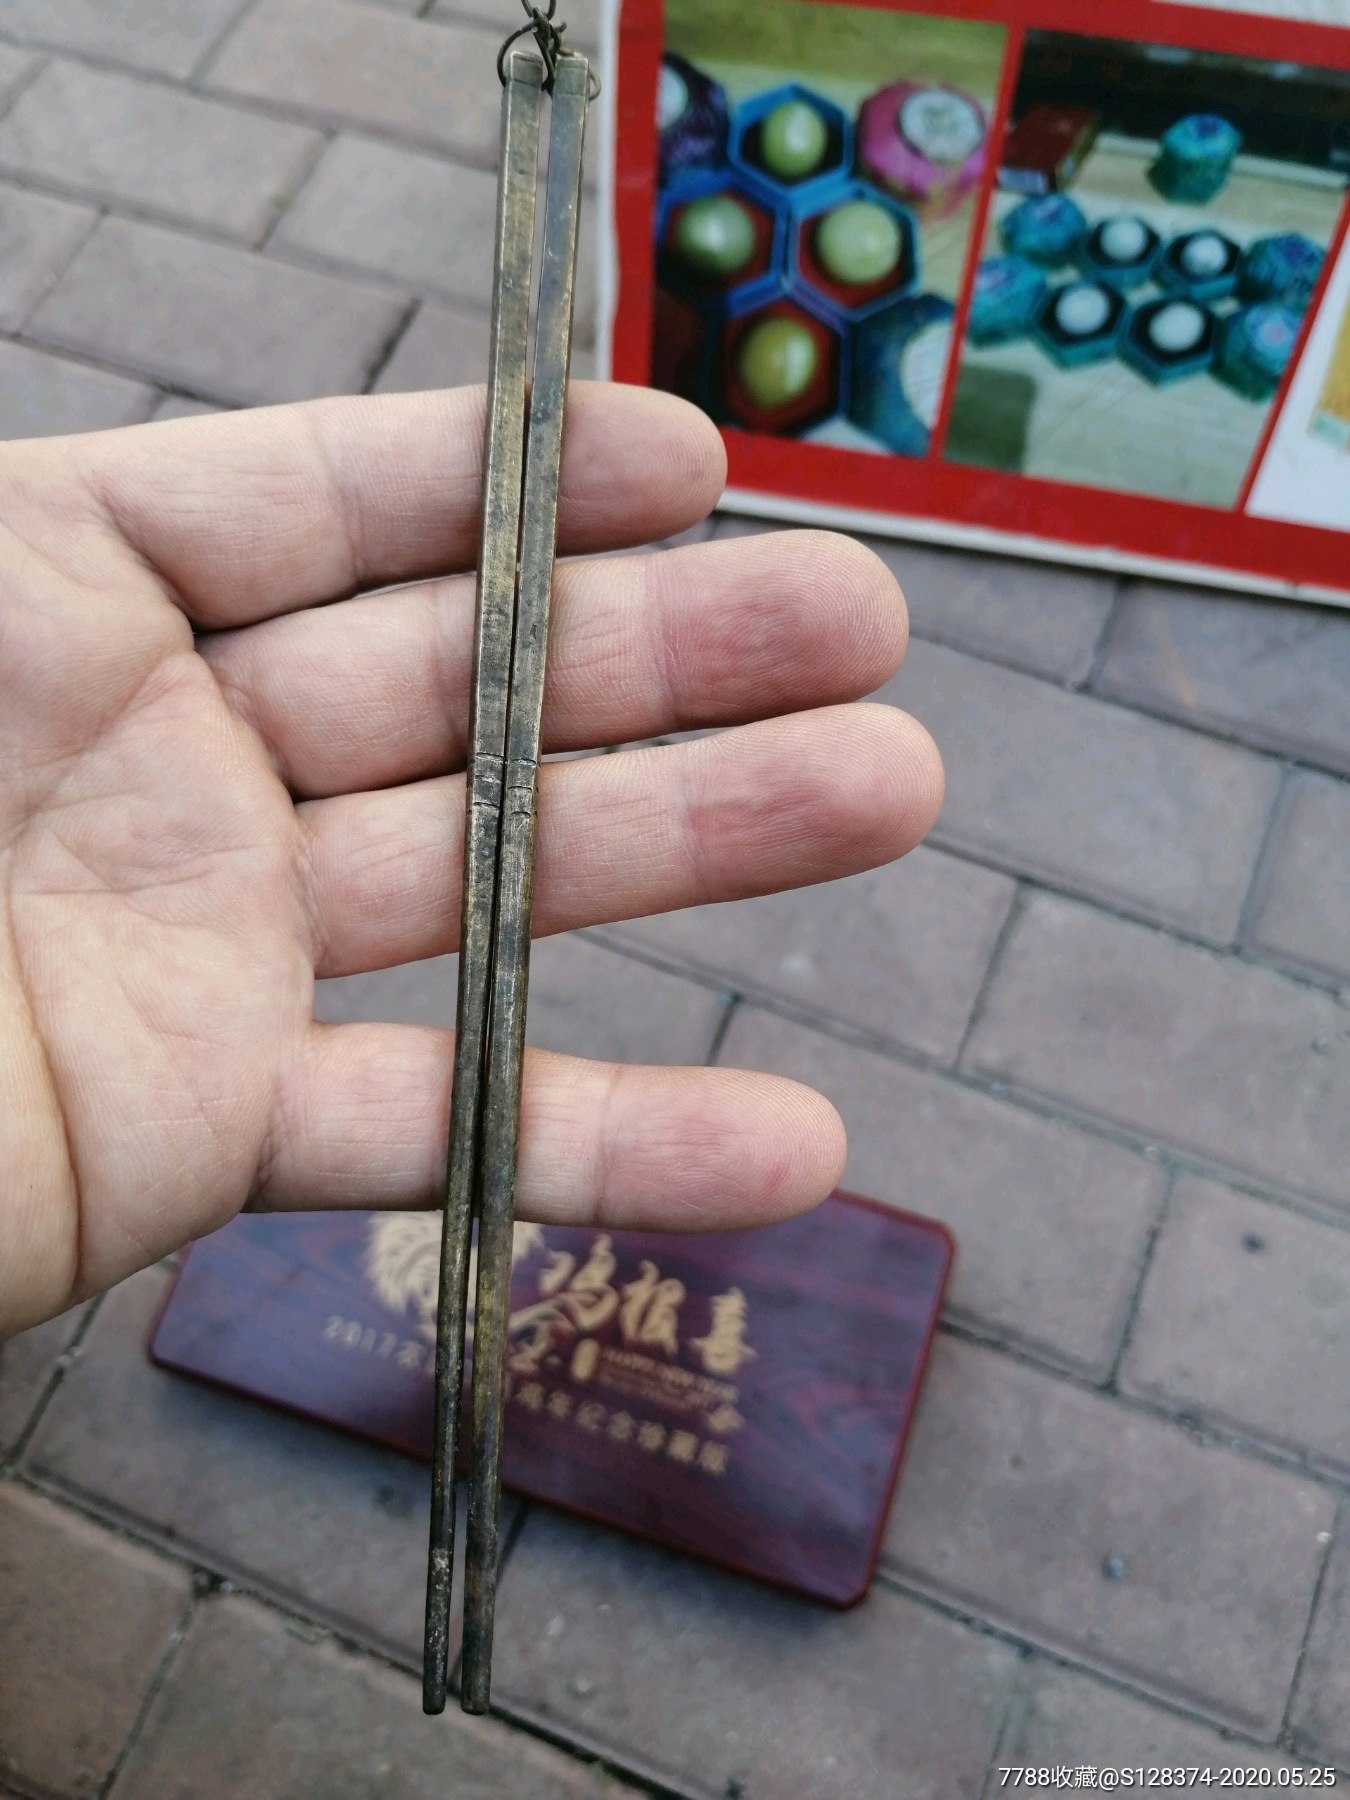 青铜筷子有链子的图片图片